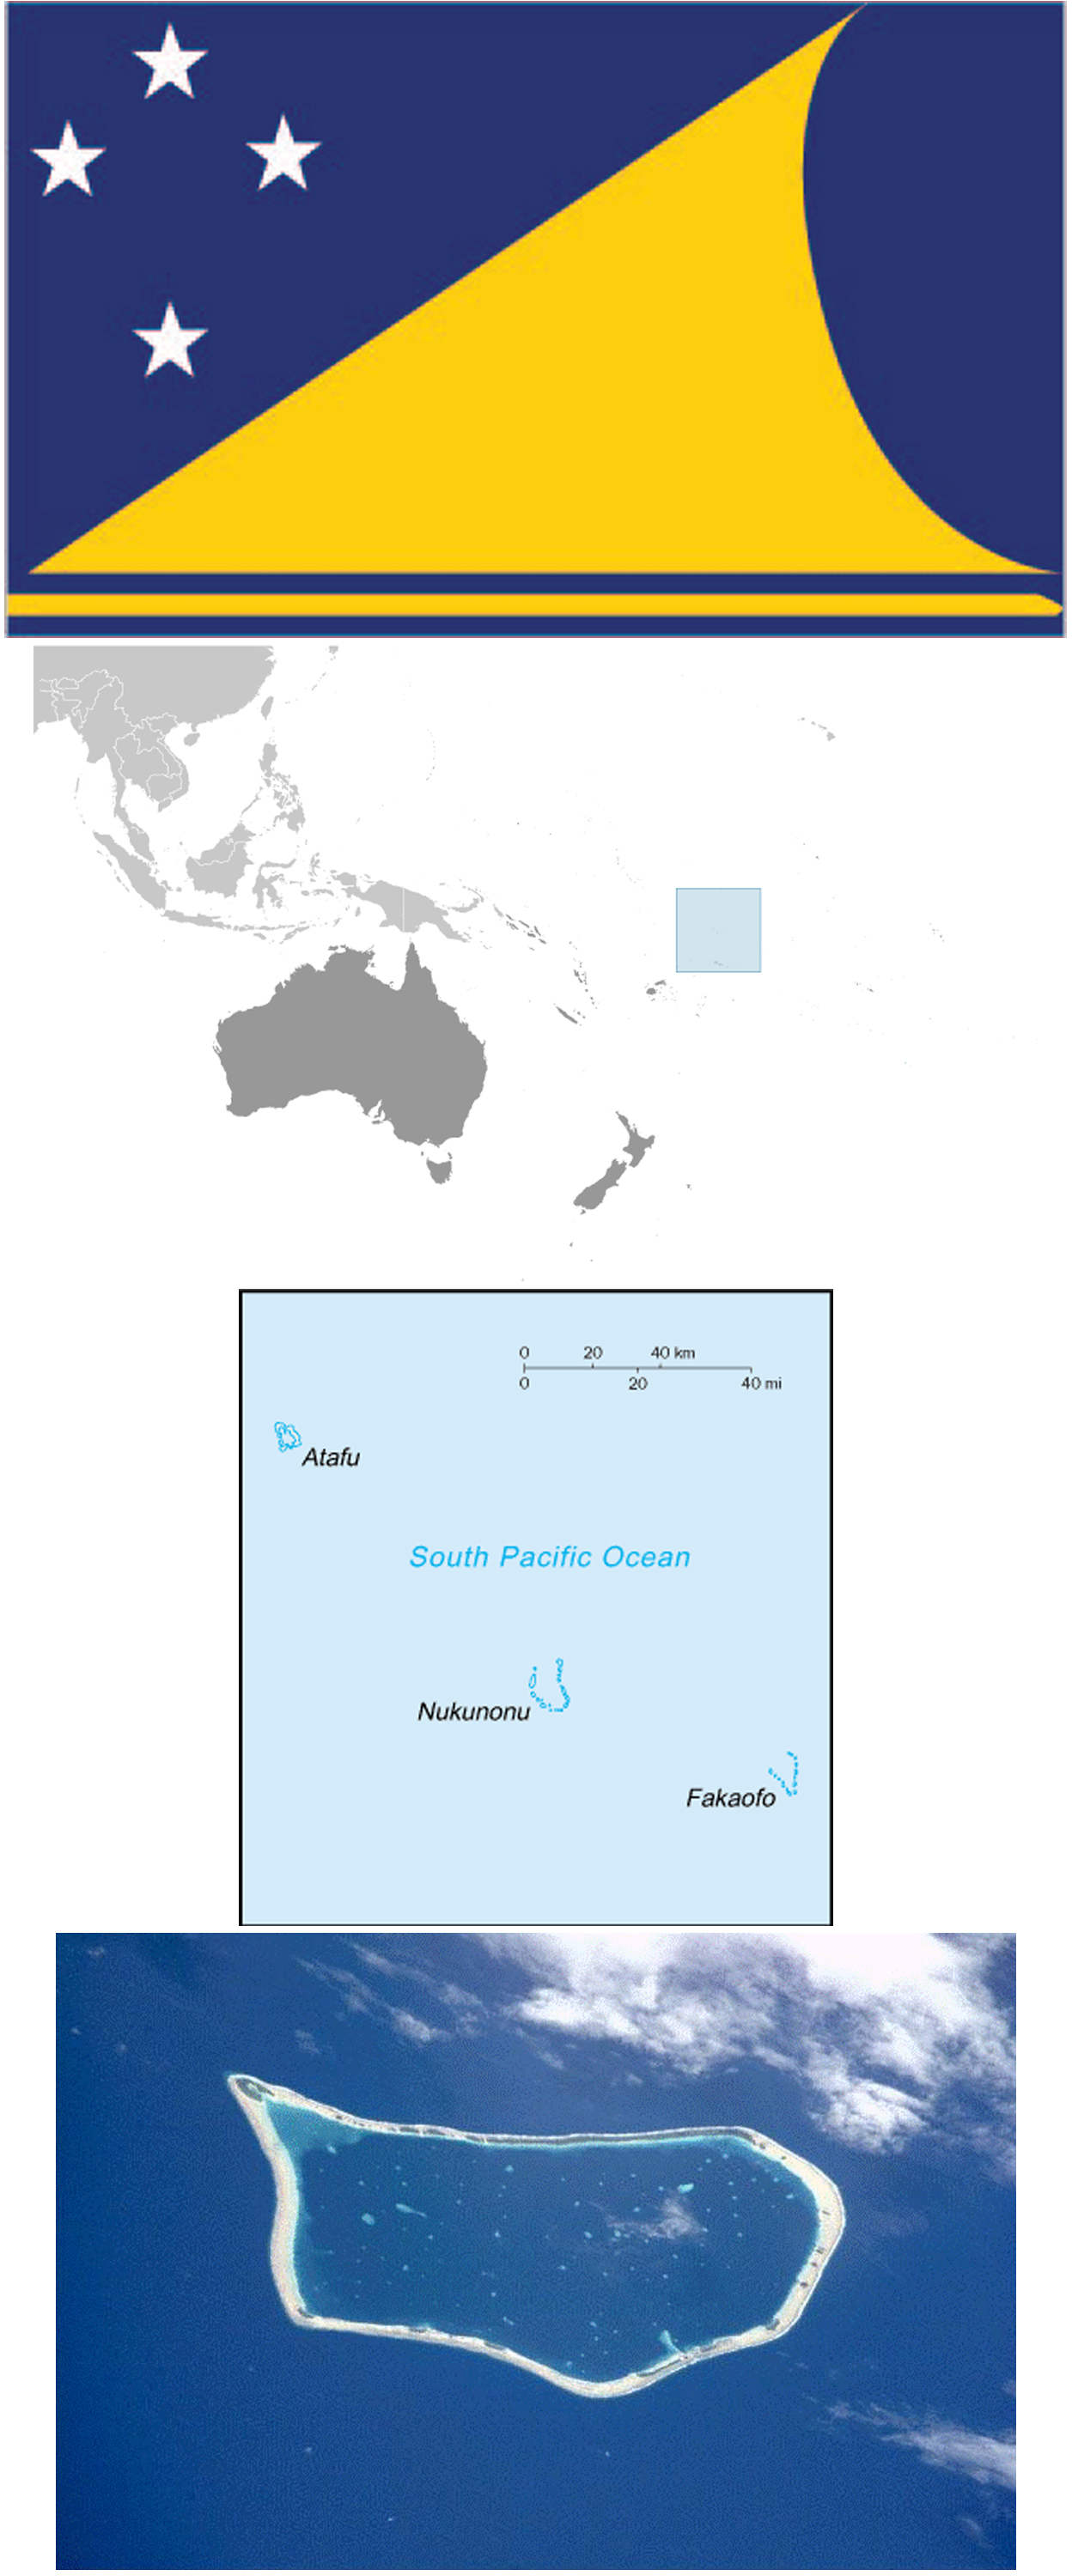 Tokelau News